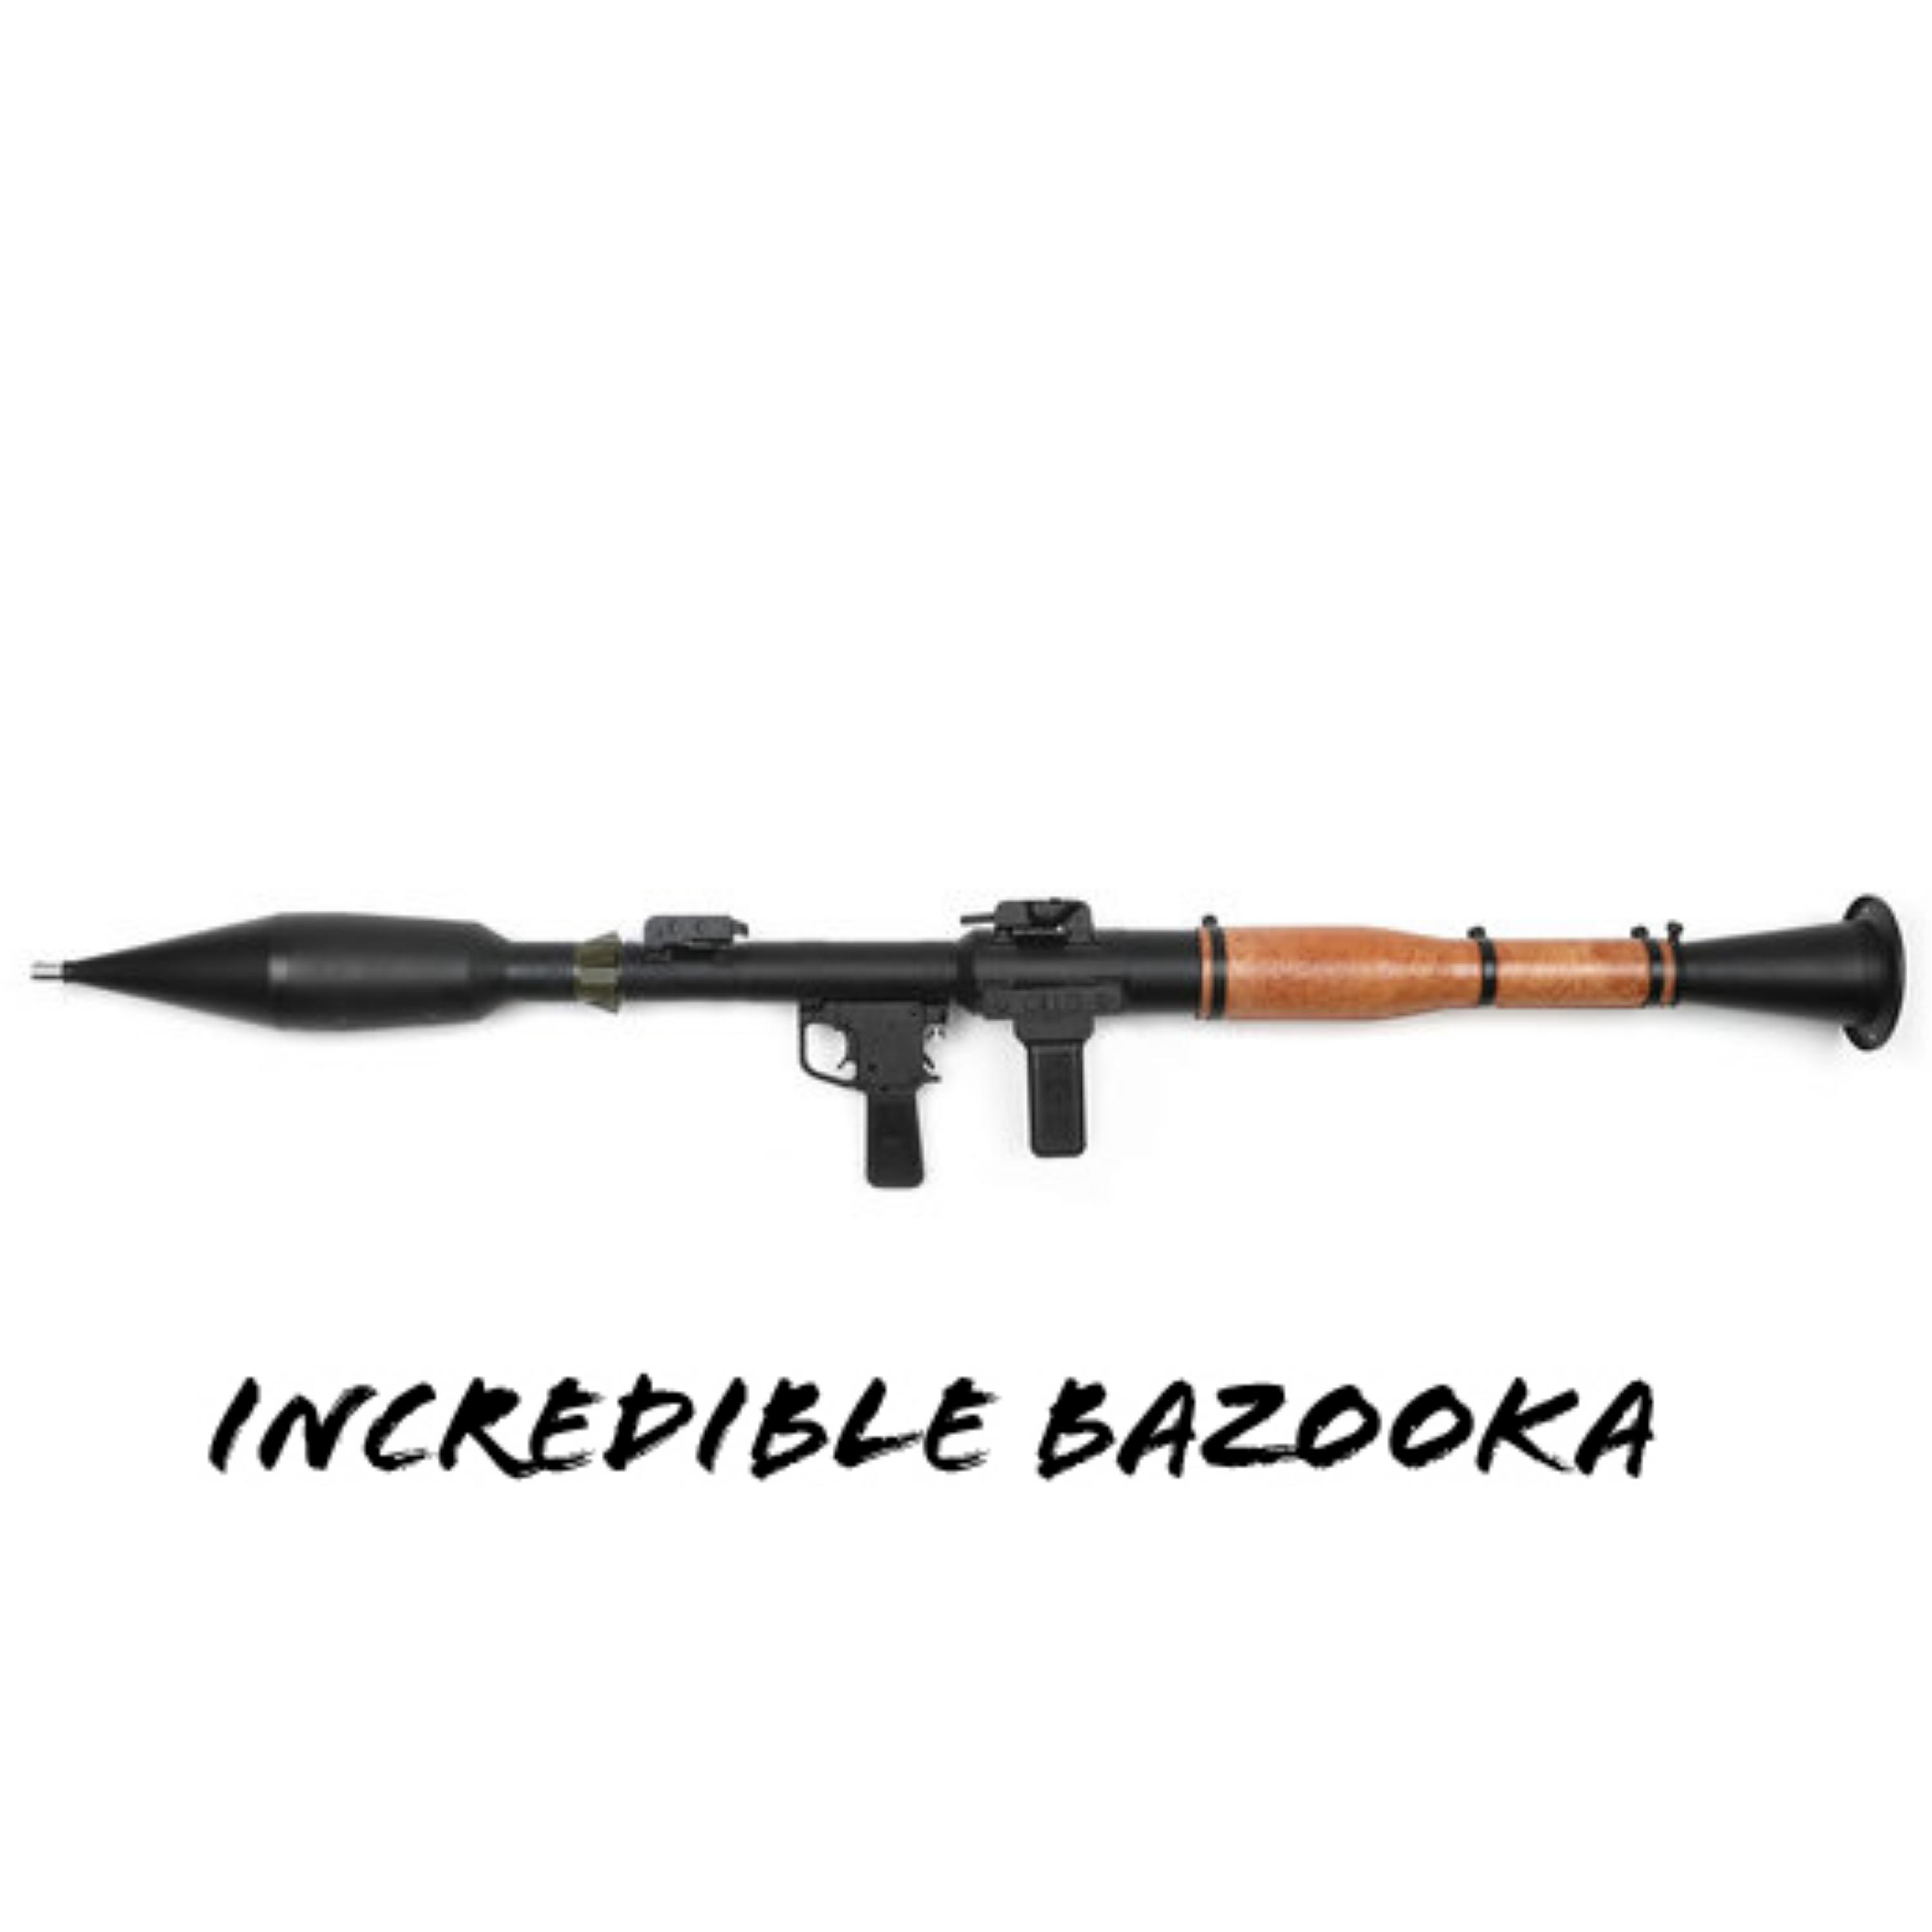 Steve Mac - Incredible Bazooka